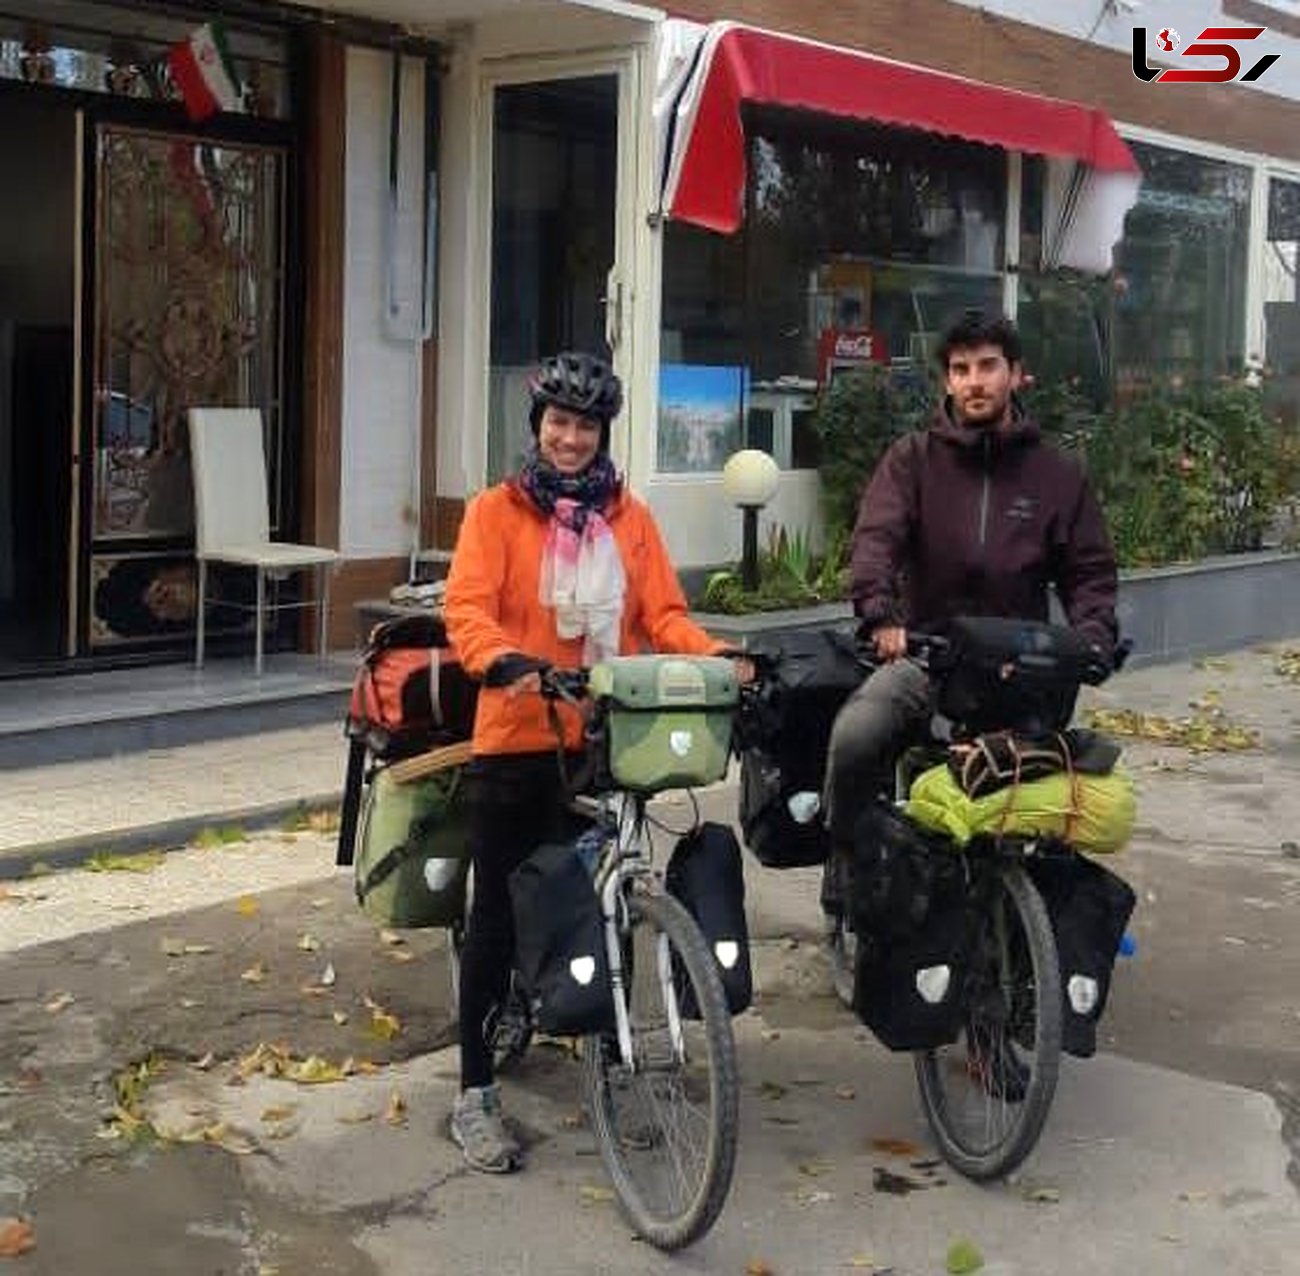 زوج دوچرخه سوار آرژانتینی به هشترود رسیدند / هموطنان مسی جام جهانی را در ایران می بینند